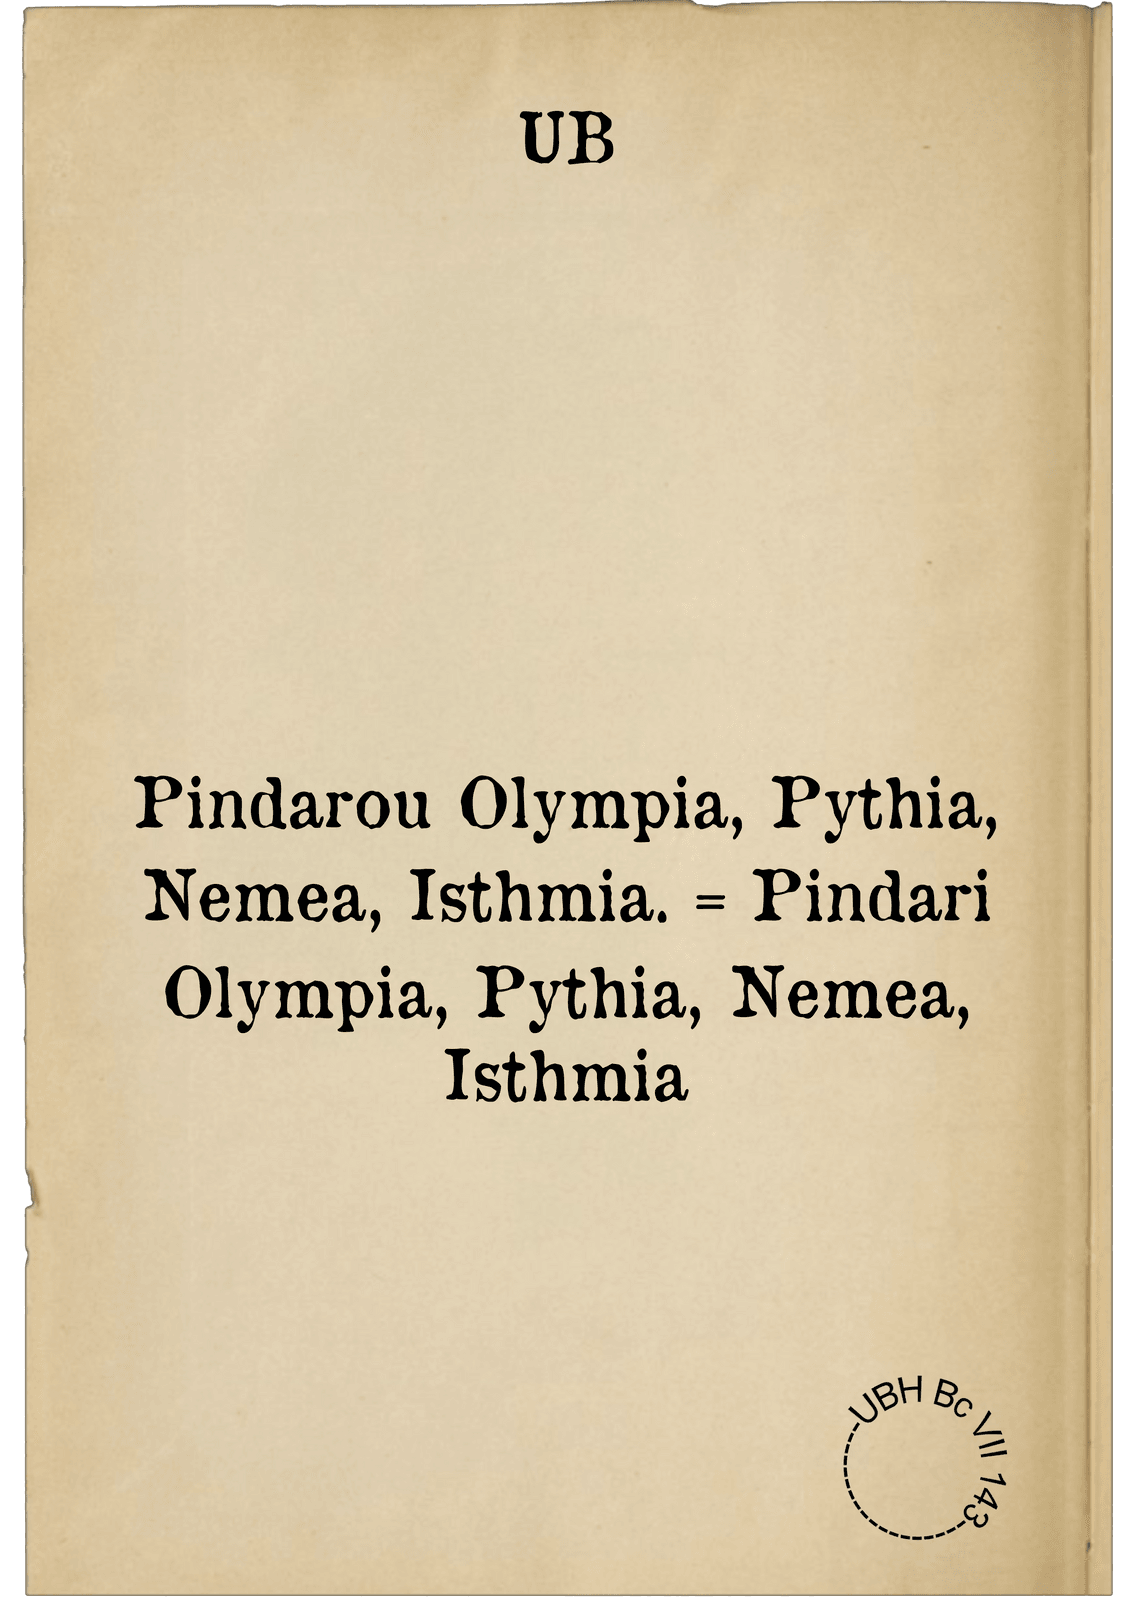 Pindarou Olympia, Pythia, Nemea, Isthmia. = Pindari Olympia, Pythia, Nemea, Isthmia